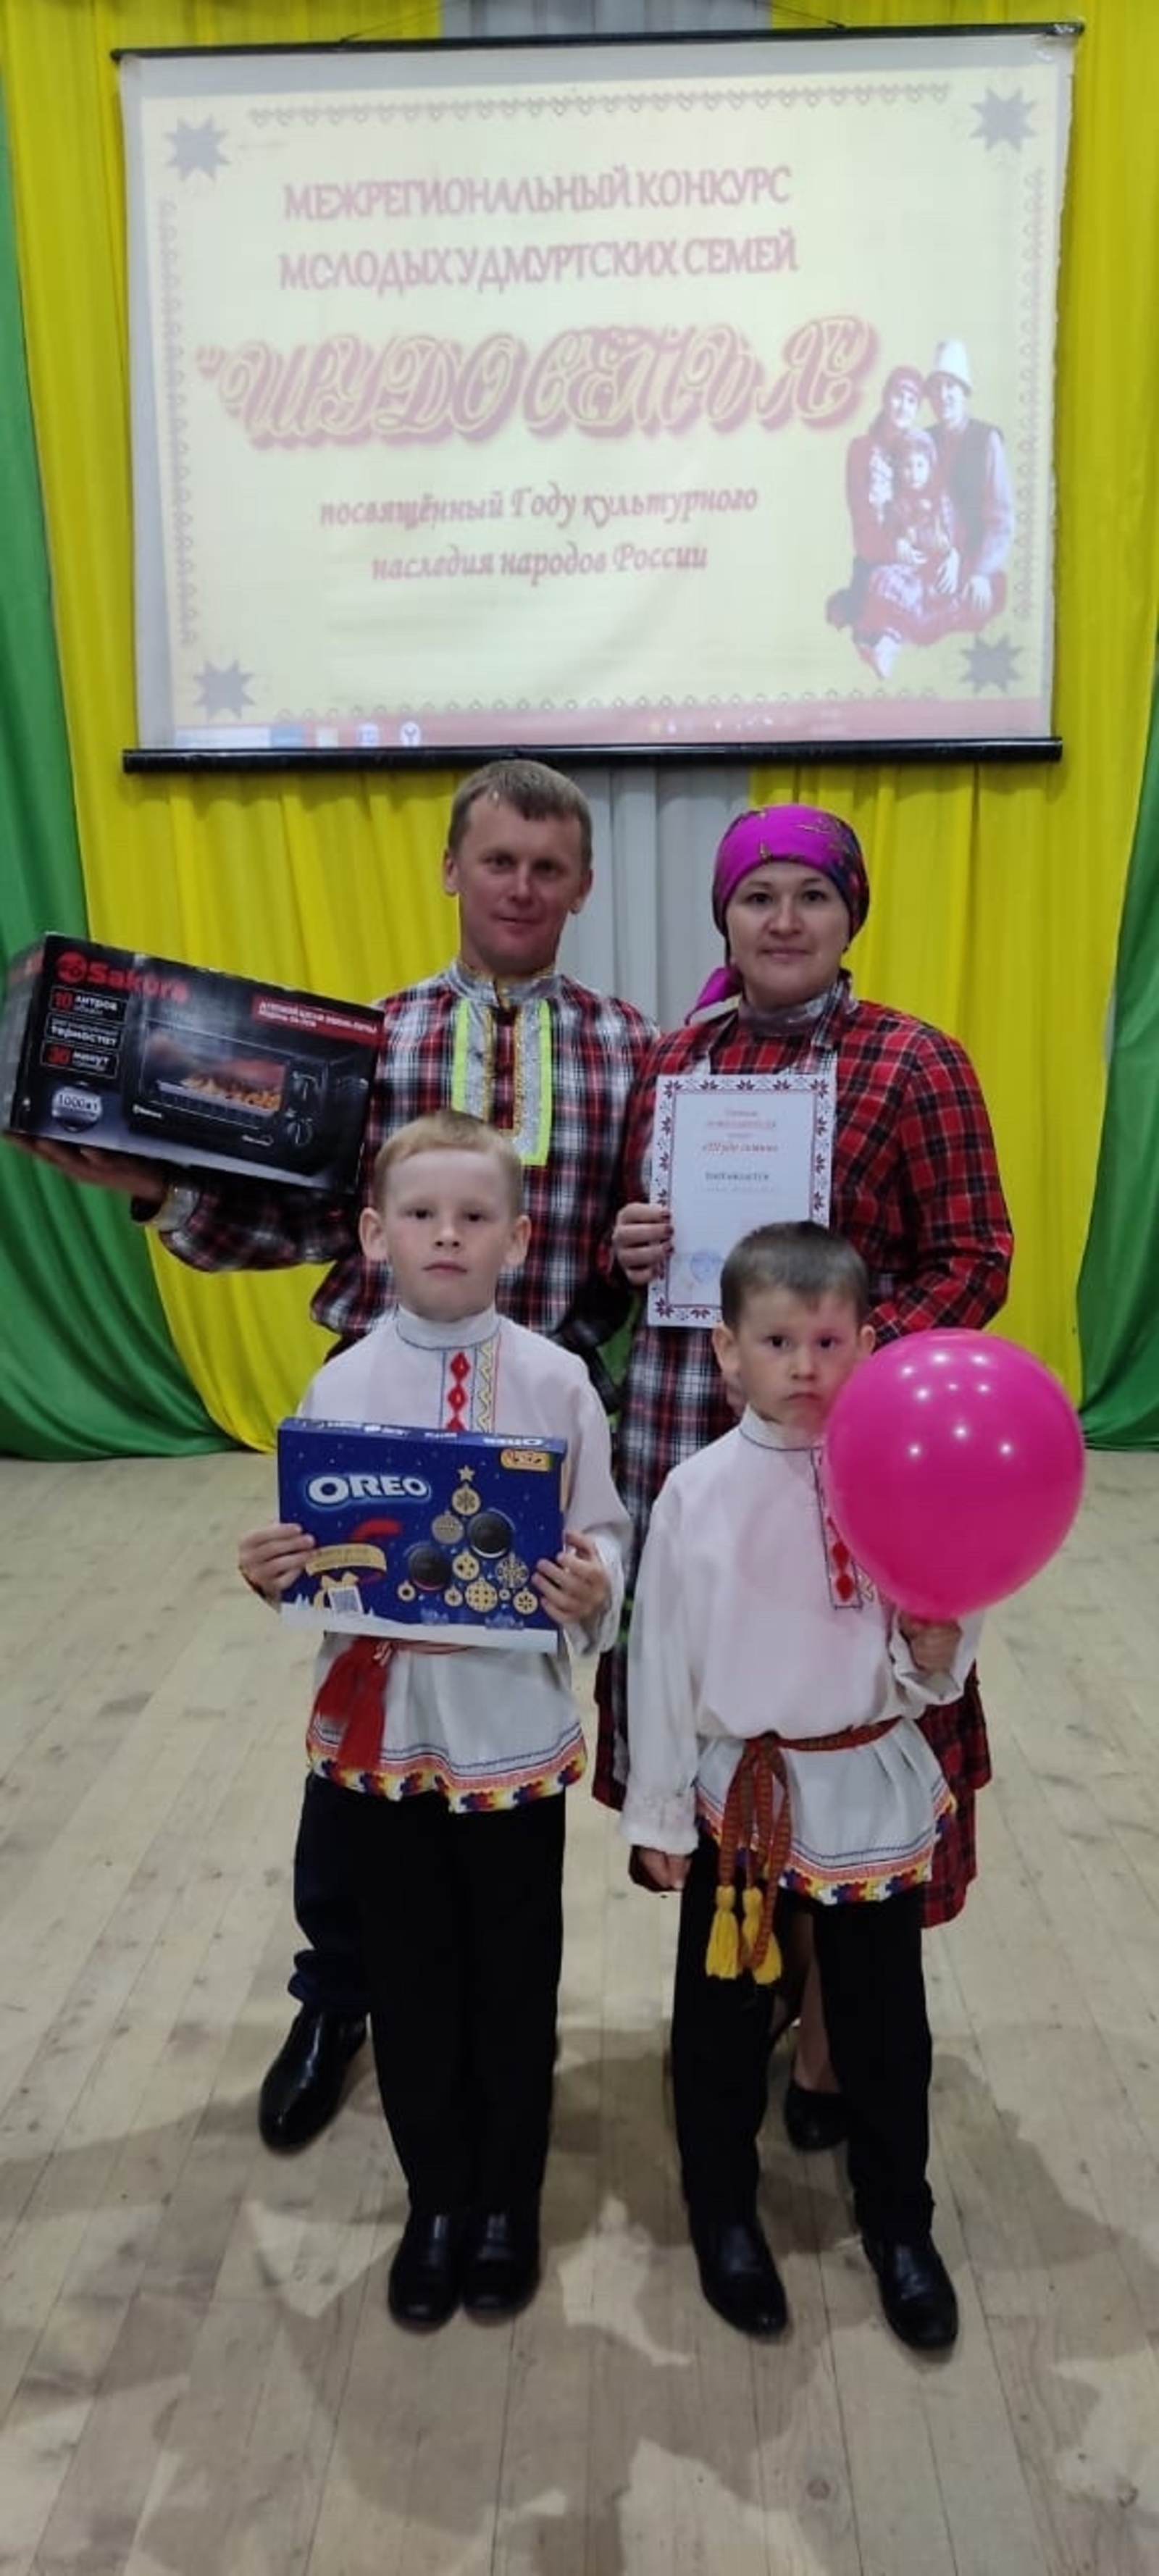 "Счастливая семья": В Татышлинском районе прошёл конкурс молодых удмуртских семей